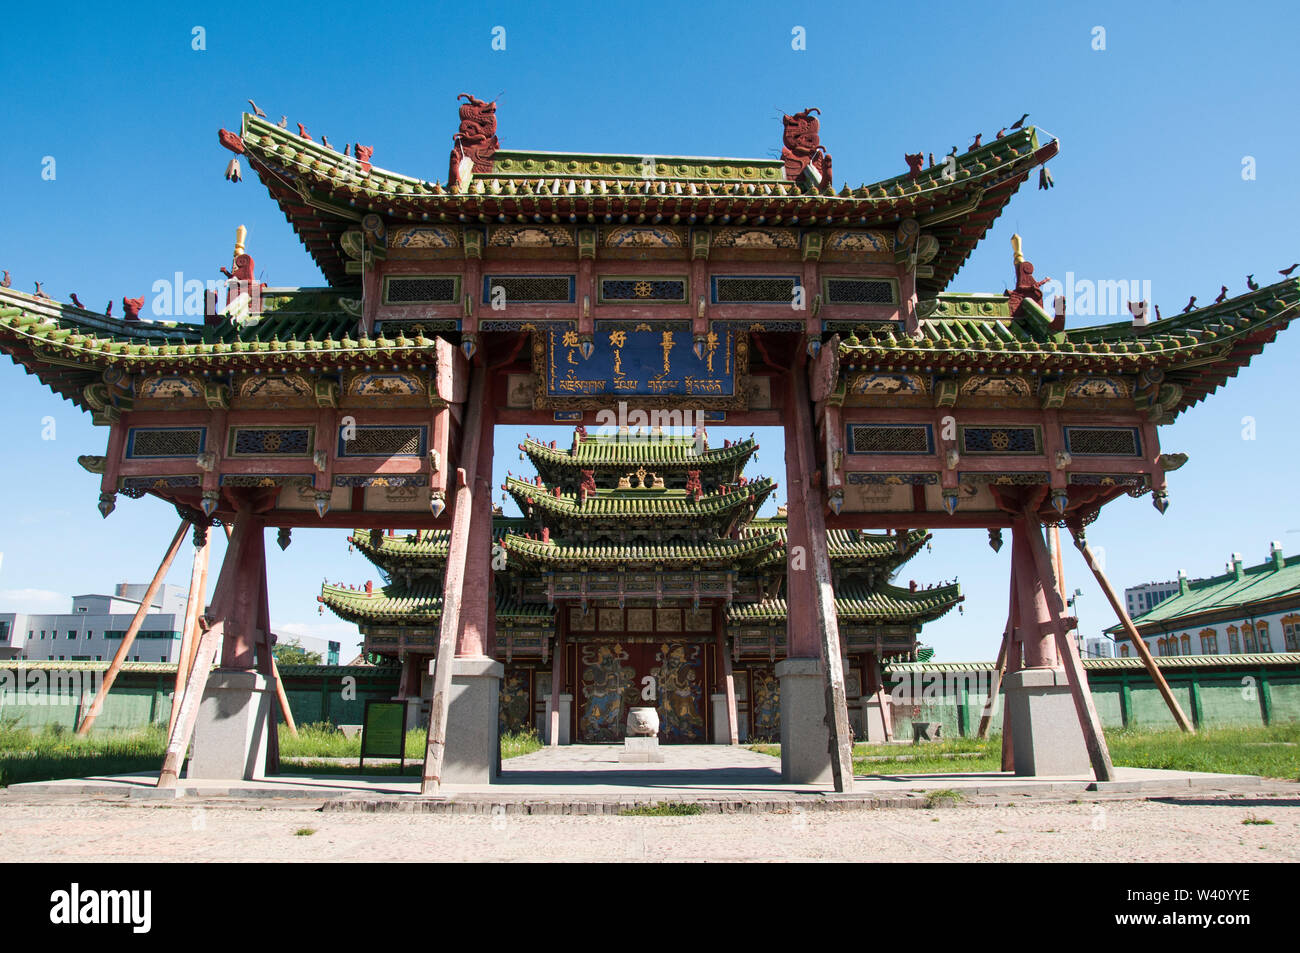 Portes de style mandchou et pavillons du Palais d'hiver du Bogd Khan, le dernier roi de Mongolie, à Oulan-Bator (Oulan-Bator) Banque D'Images